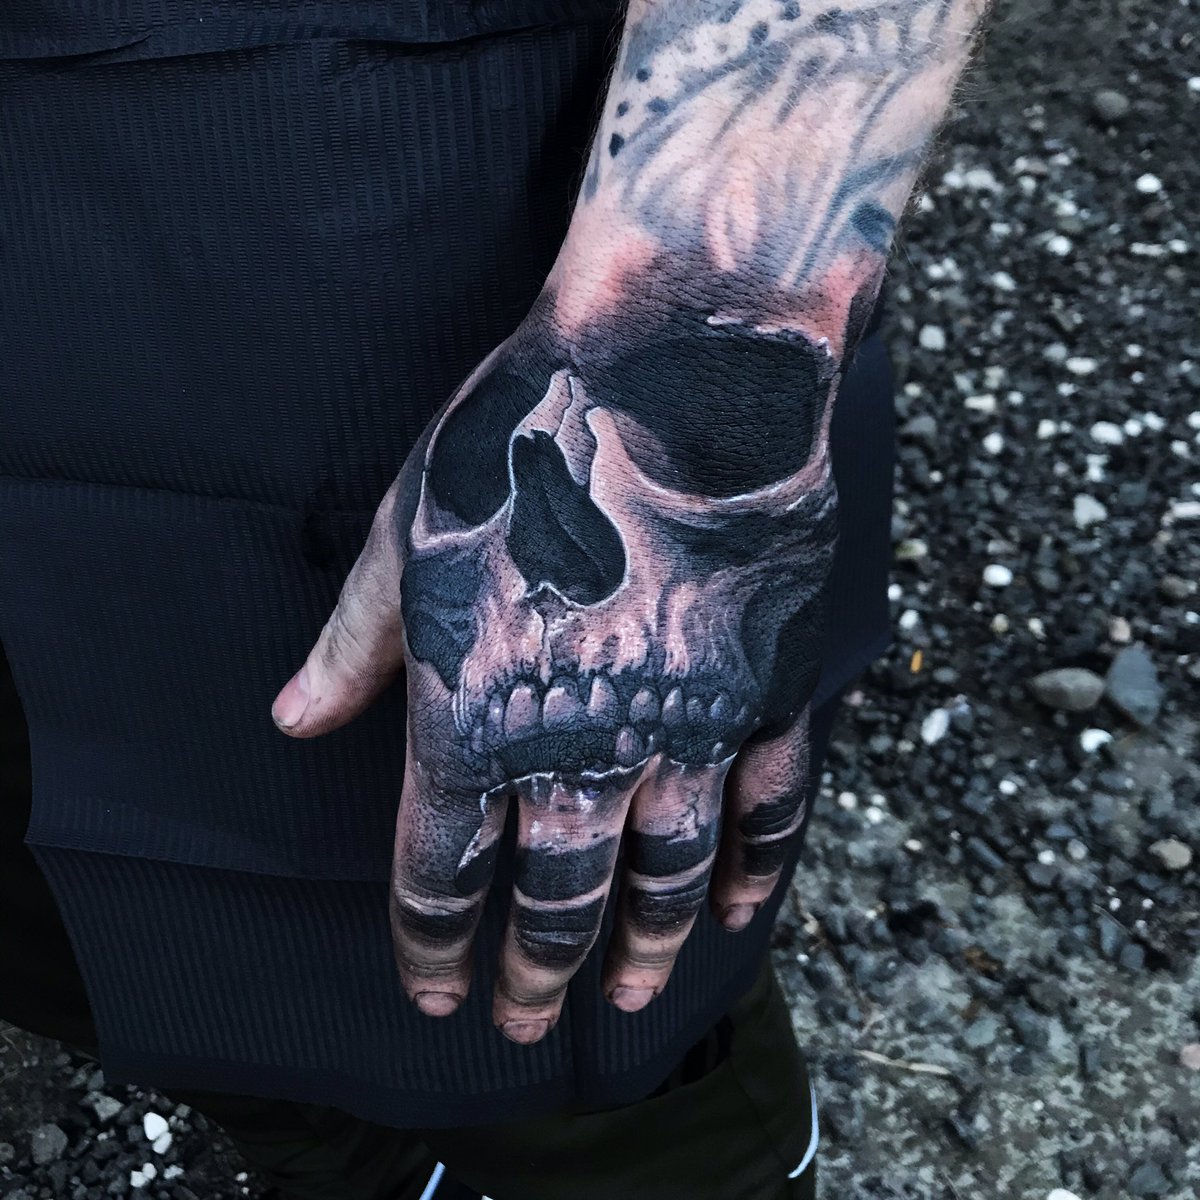 Skull Cap Knee Tattoo by redsamuraidragon on DeviantArt